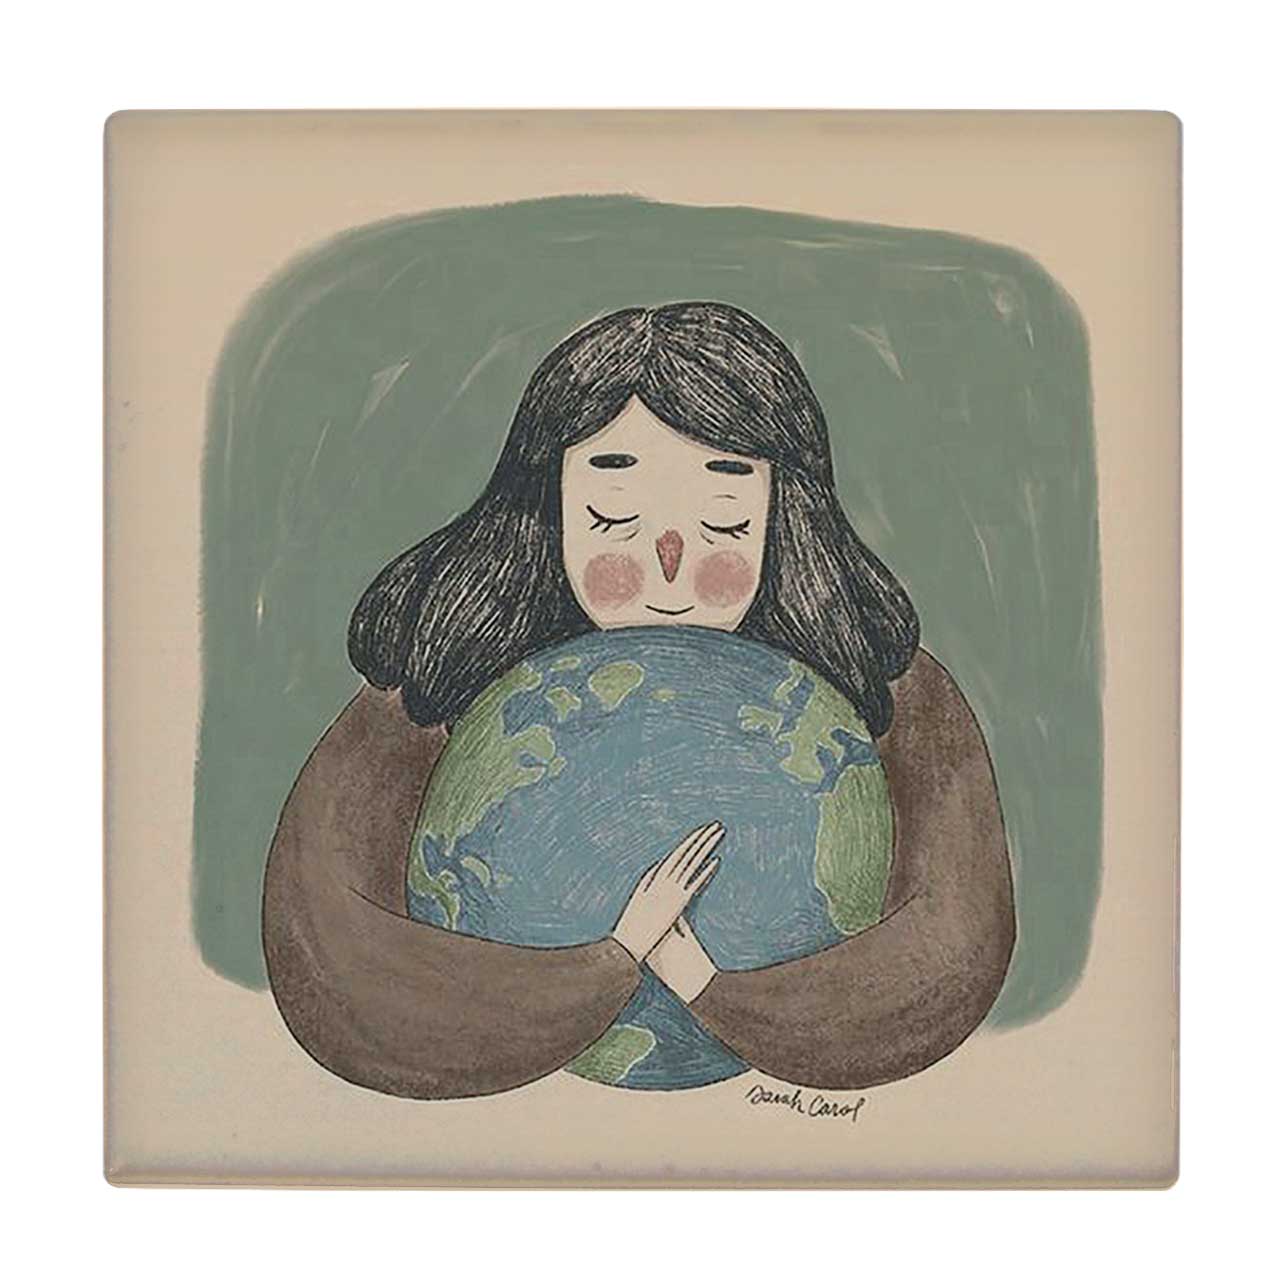 زیر لیوانی طرح نقاشی دختر بچه و کره زمین کد 6147681_5407